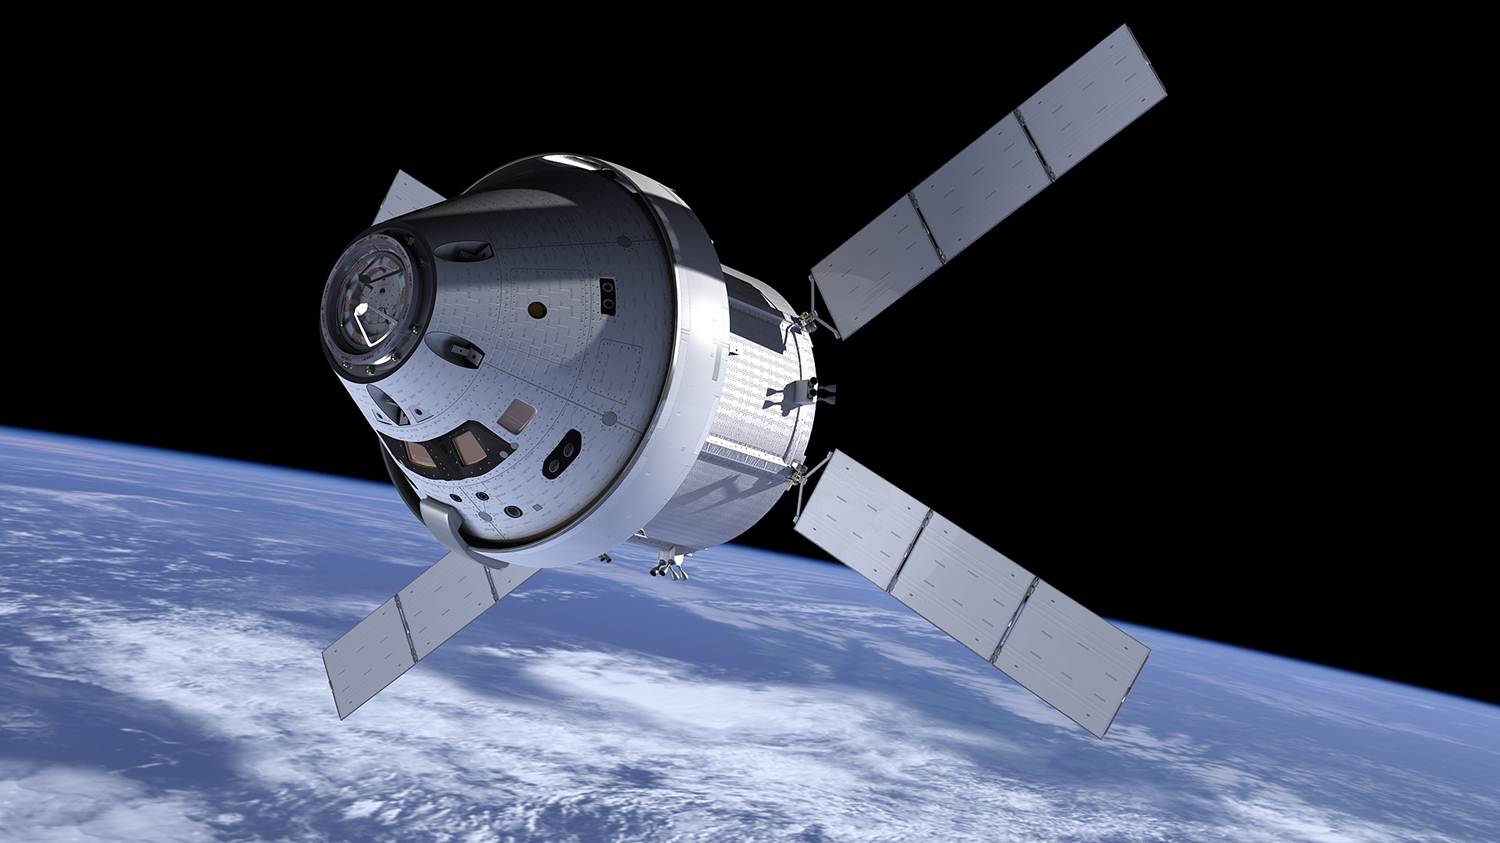 Si la NASA decide utilizar privada de un misil en la próxima misión a la luna, eso cambiaría el cuento de la industria